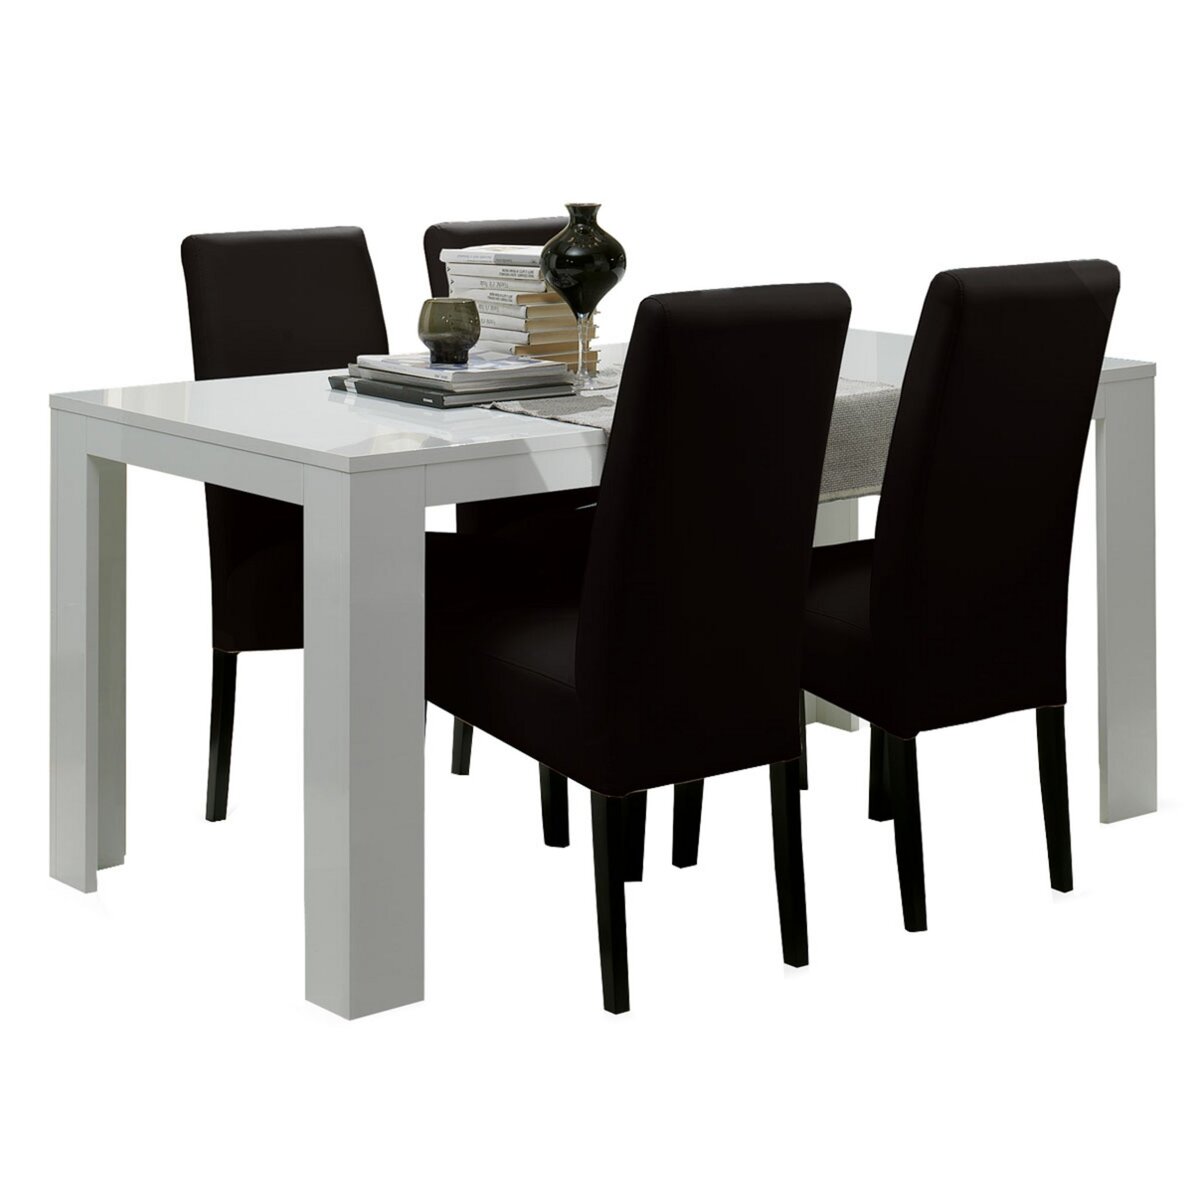 Table PISA L.160 cm. + 4 chaises.